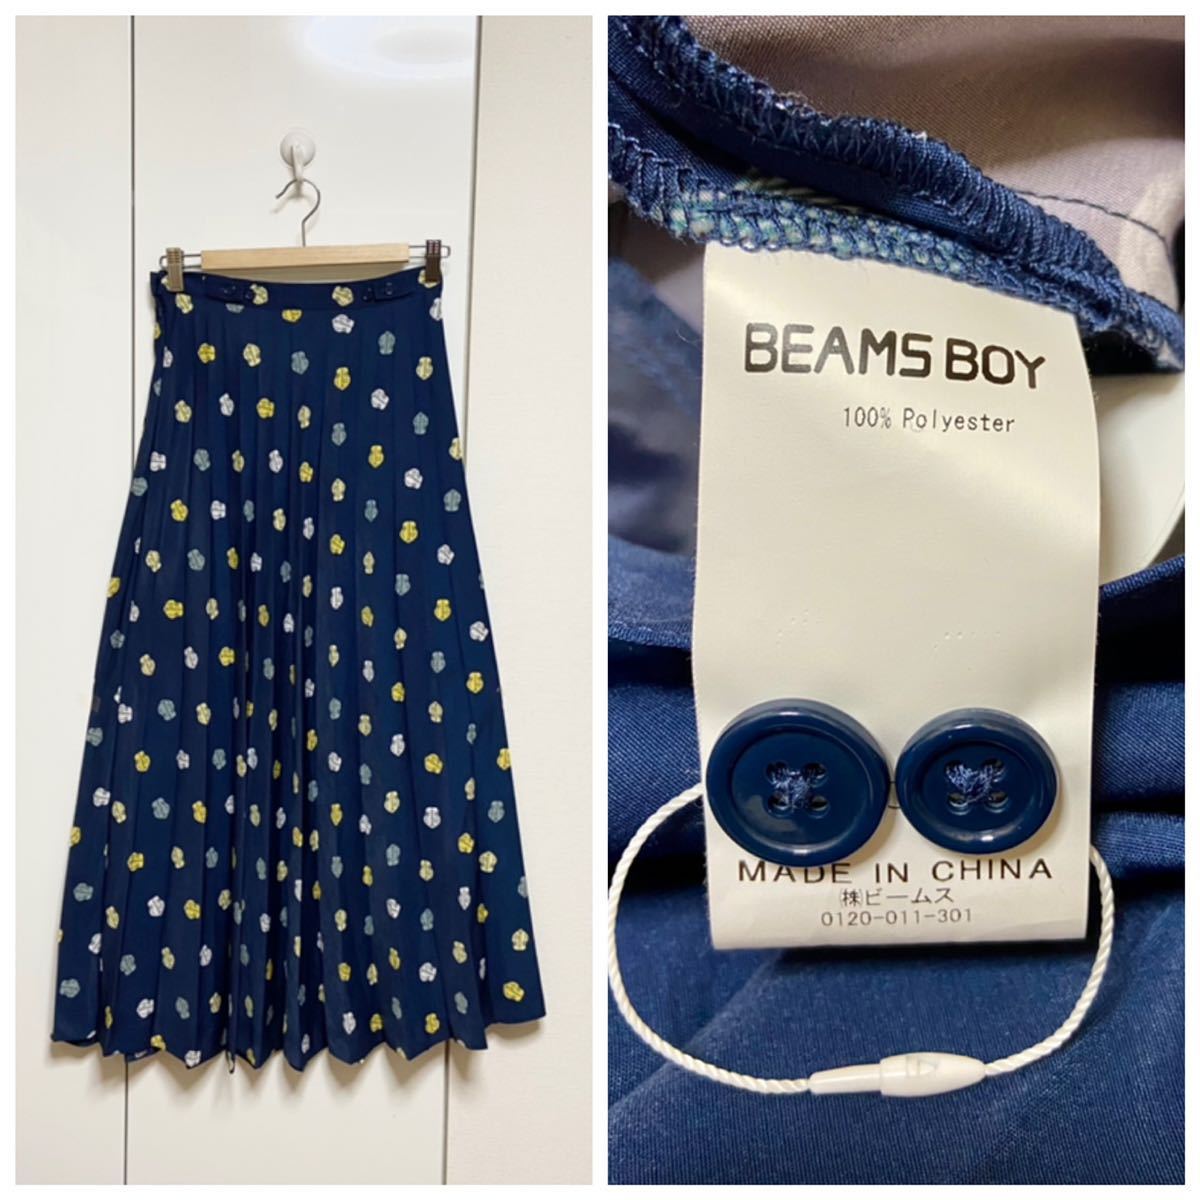  не использовался BEAMS BOY оригинал принт юбка в складку обычная цена 15180 иен 